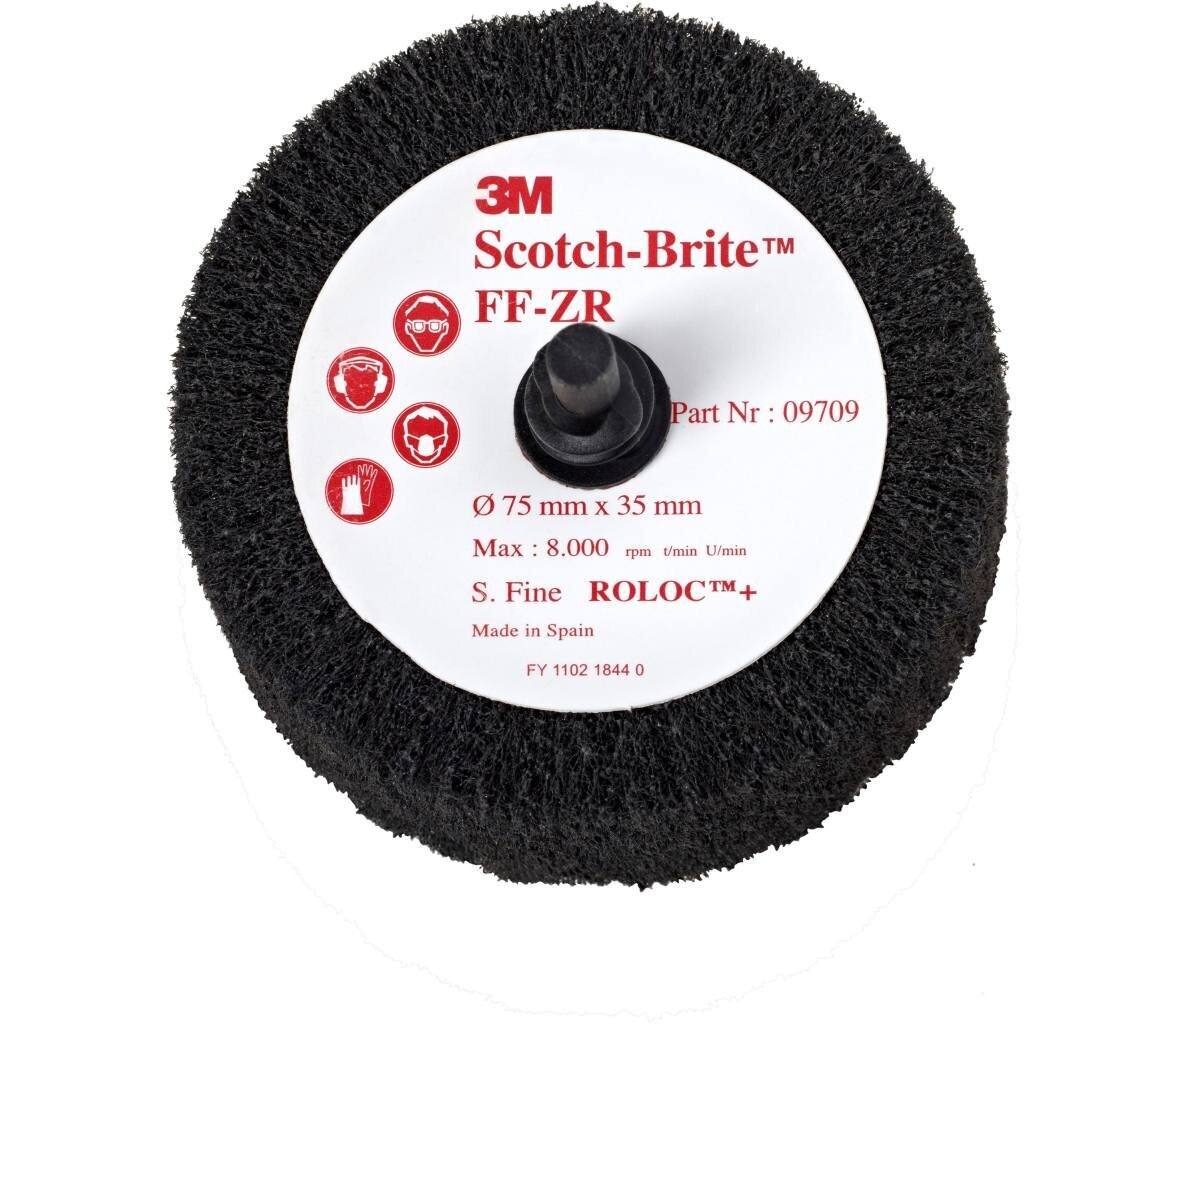 3M Scotch-Brite Roloc flap brush FF-ZR, gray, 63 mm, 32 mm, S, fine #09708